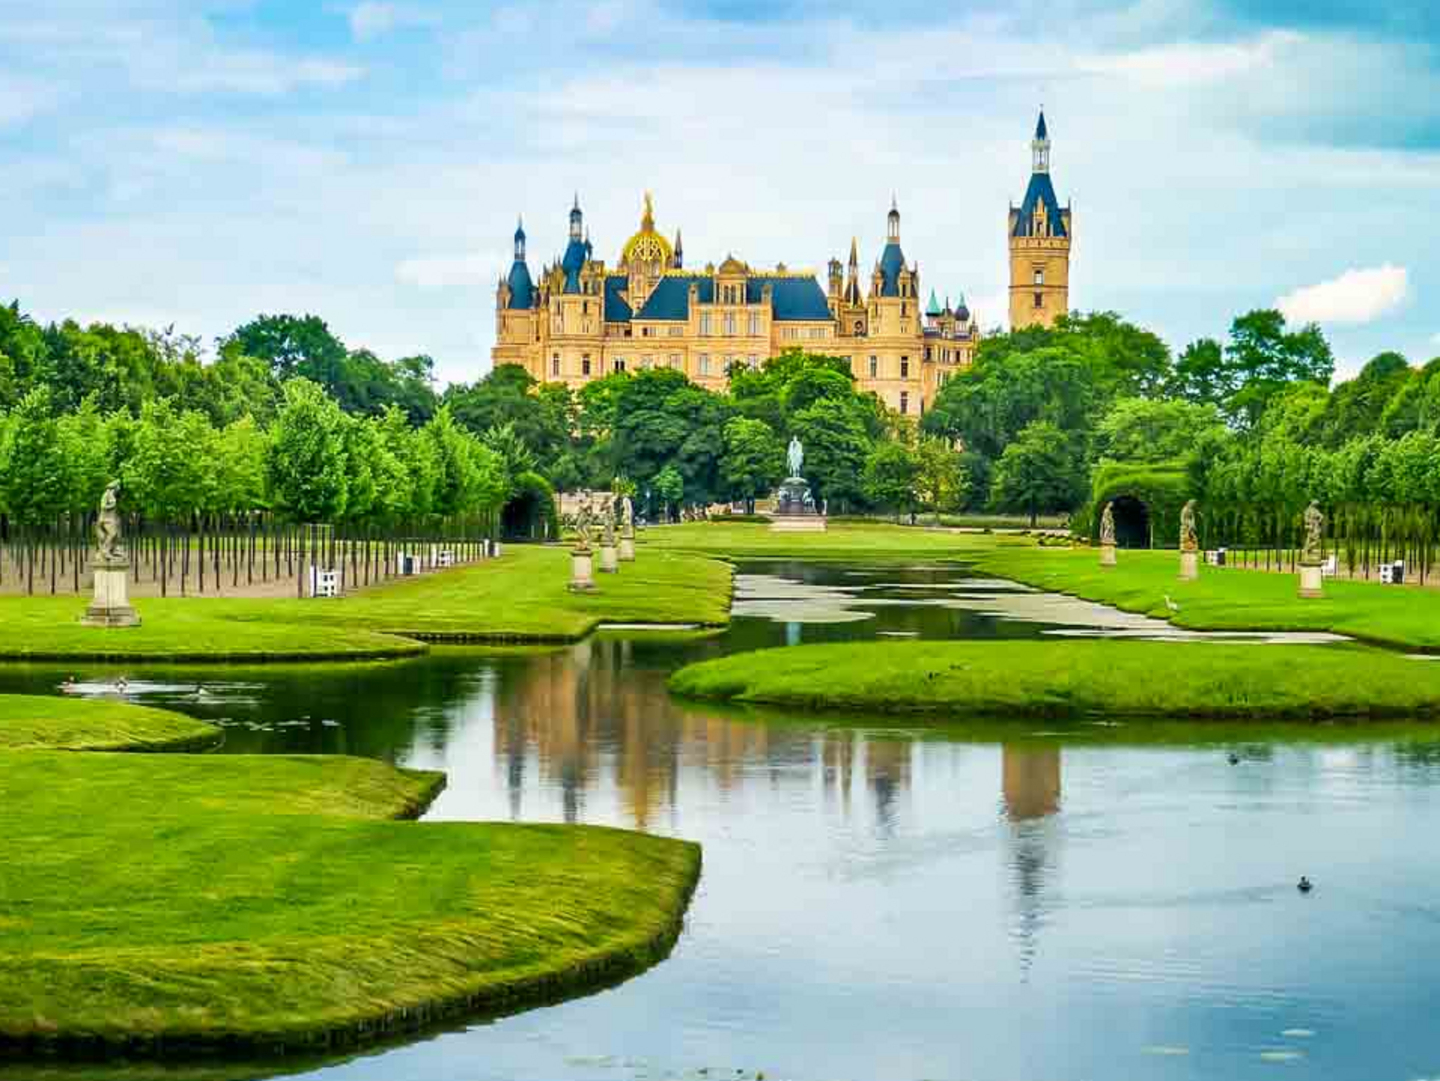 Wasser, Parks und das Schweriner Schloss prägen die Landeshauptstadt von Mecklenburg-Vorpommern